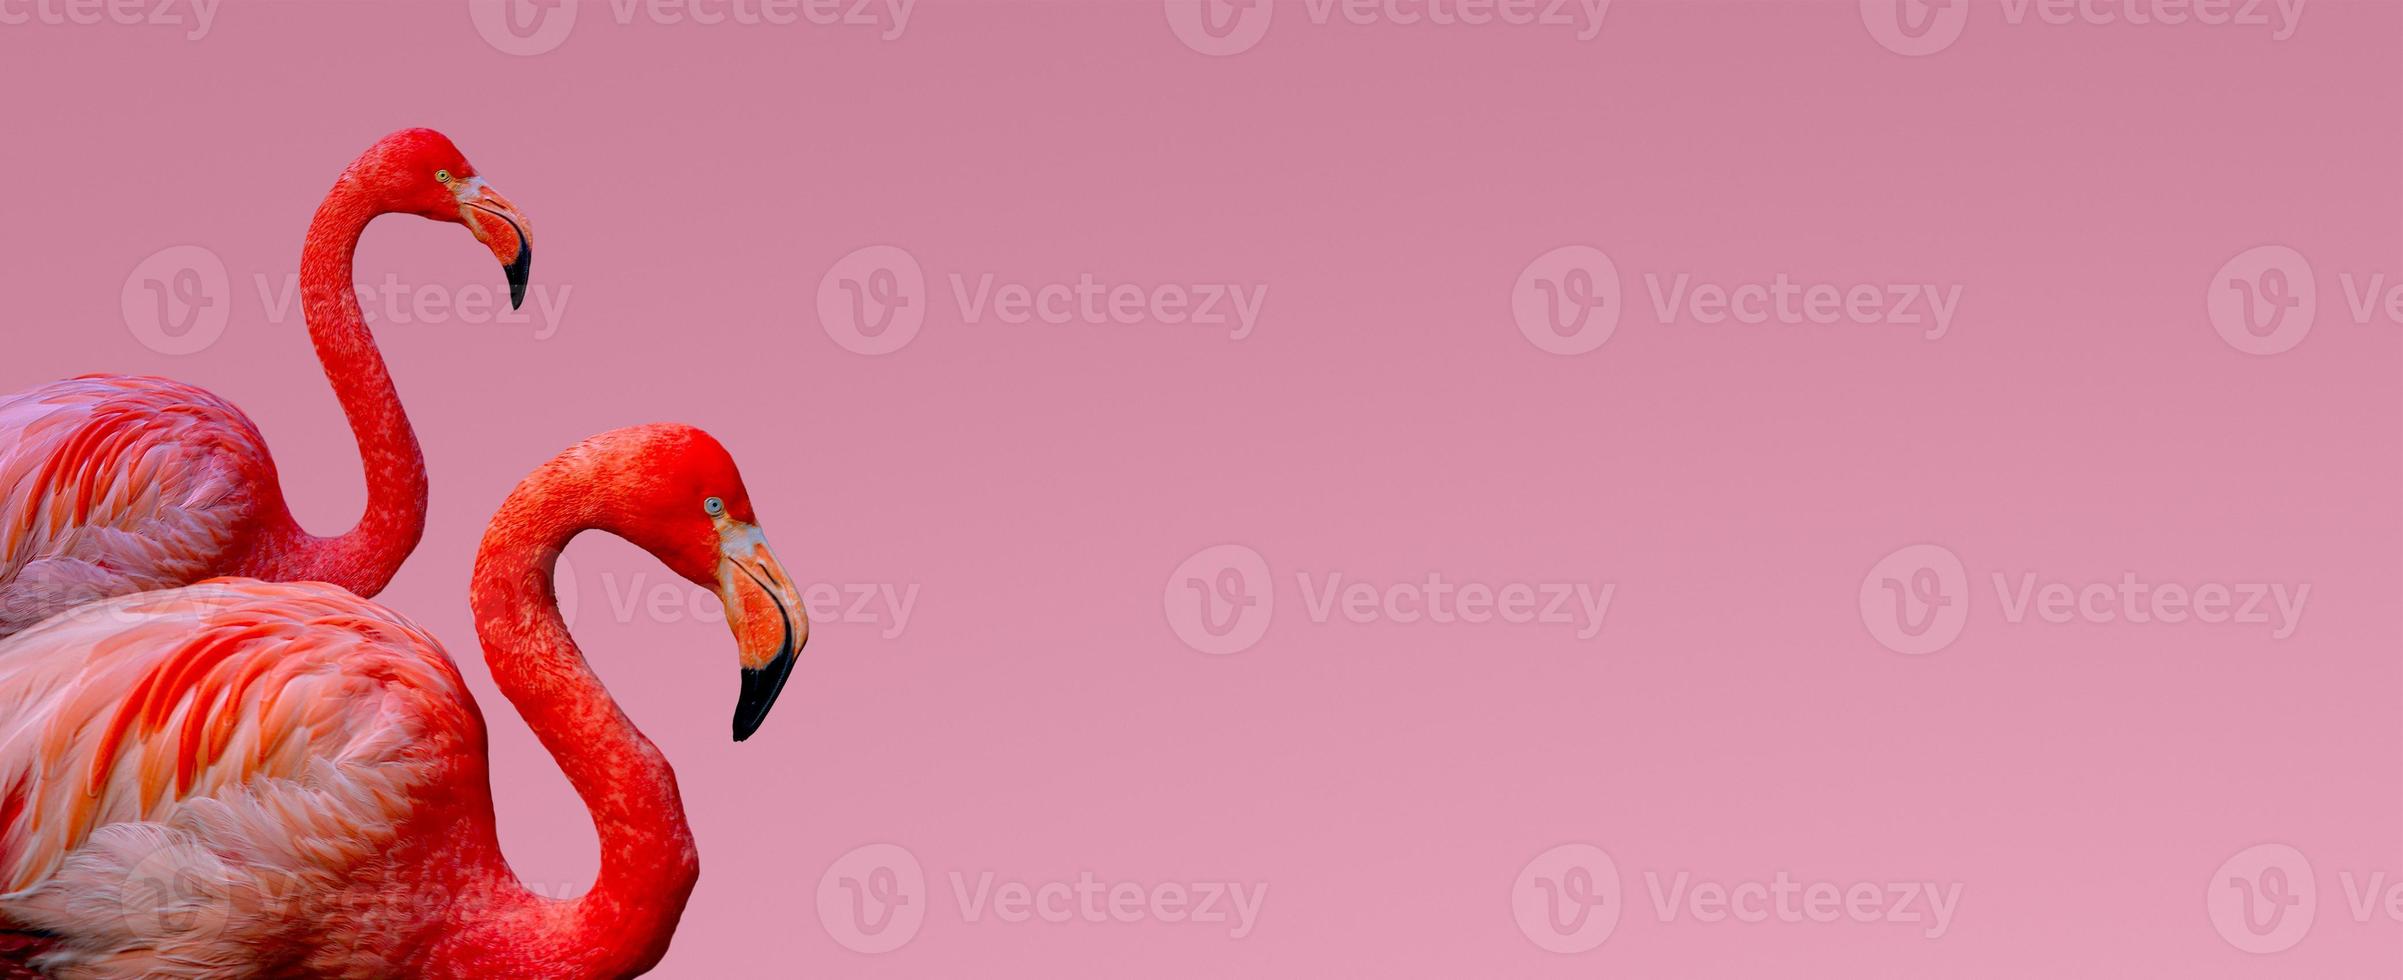 banner met twee prachtige rode flamingo's geïsoleerd op een gladde lichtroze of roze achtergrond met kopie ruimte voor tekst, close-up, details. liefde, zorg, dating en glamour concept. foto